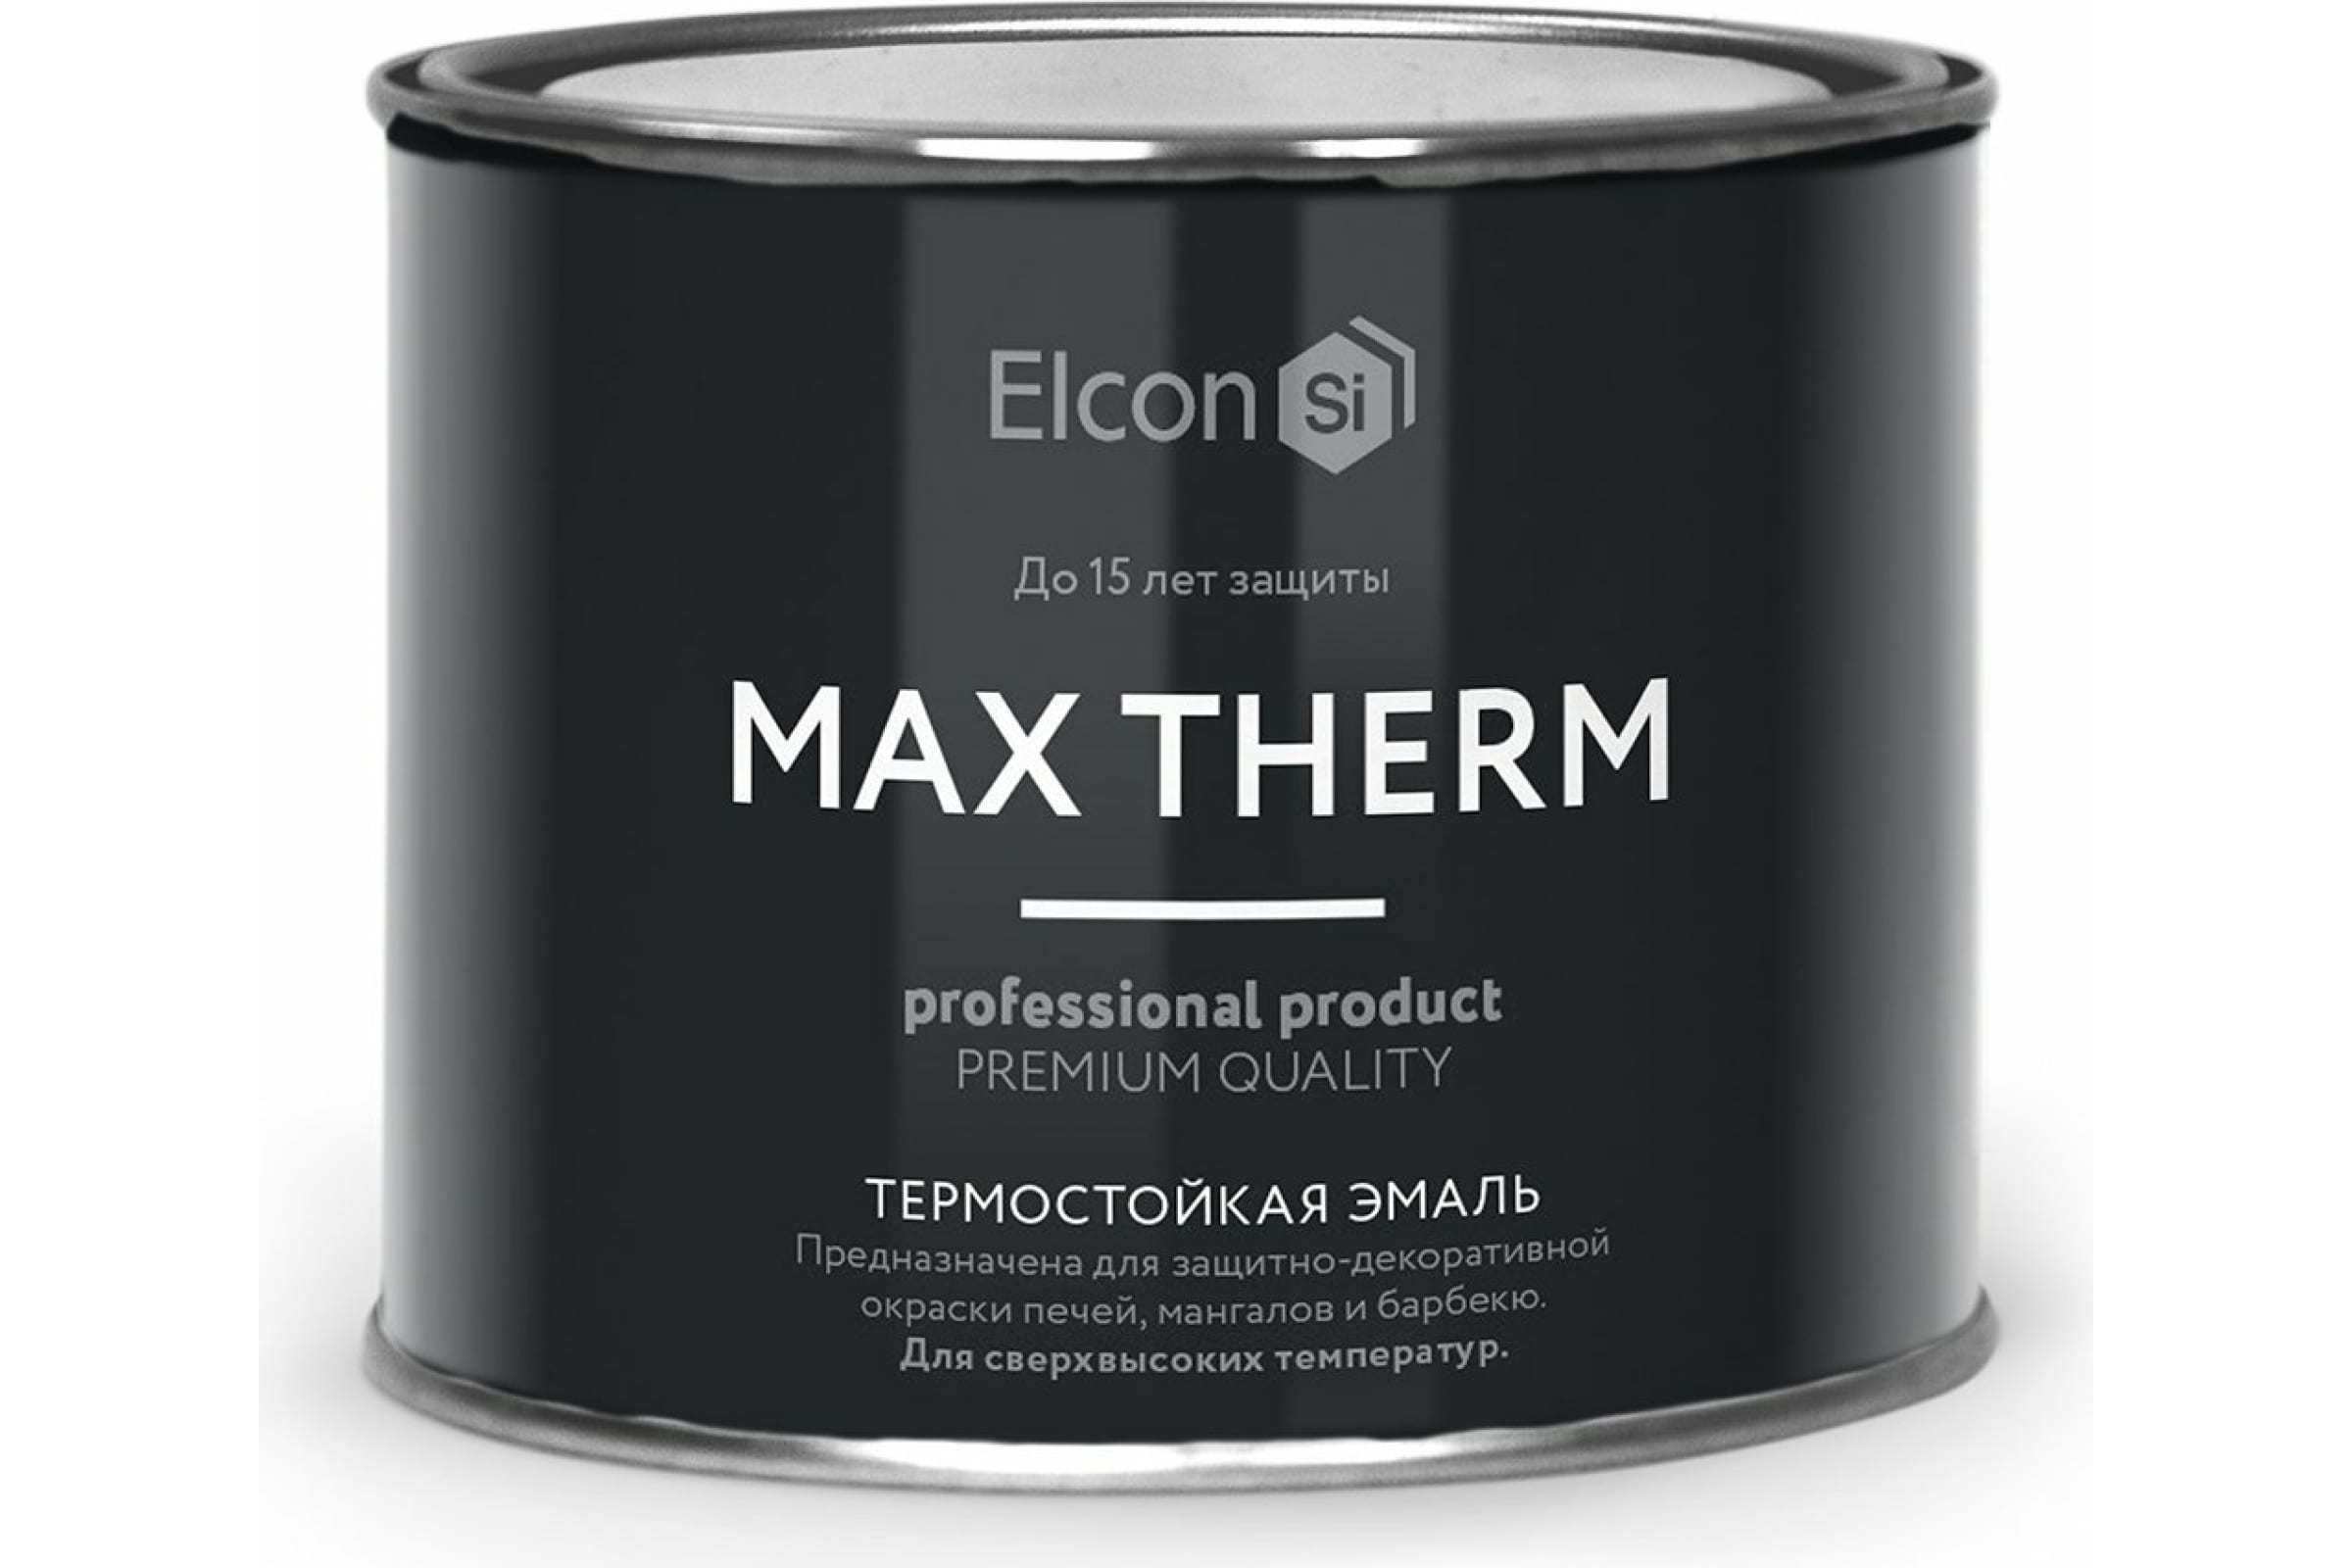 Термостойкая антикоррозионная эмаль Elcon Max Therm до 400 градусов, 0,4 л, синяя термостойкая антикоррозионная эмаль elcon max therm до 700 градусов 0 4 л серебристая